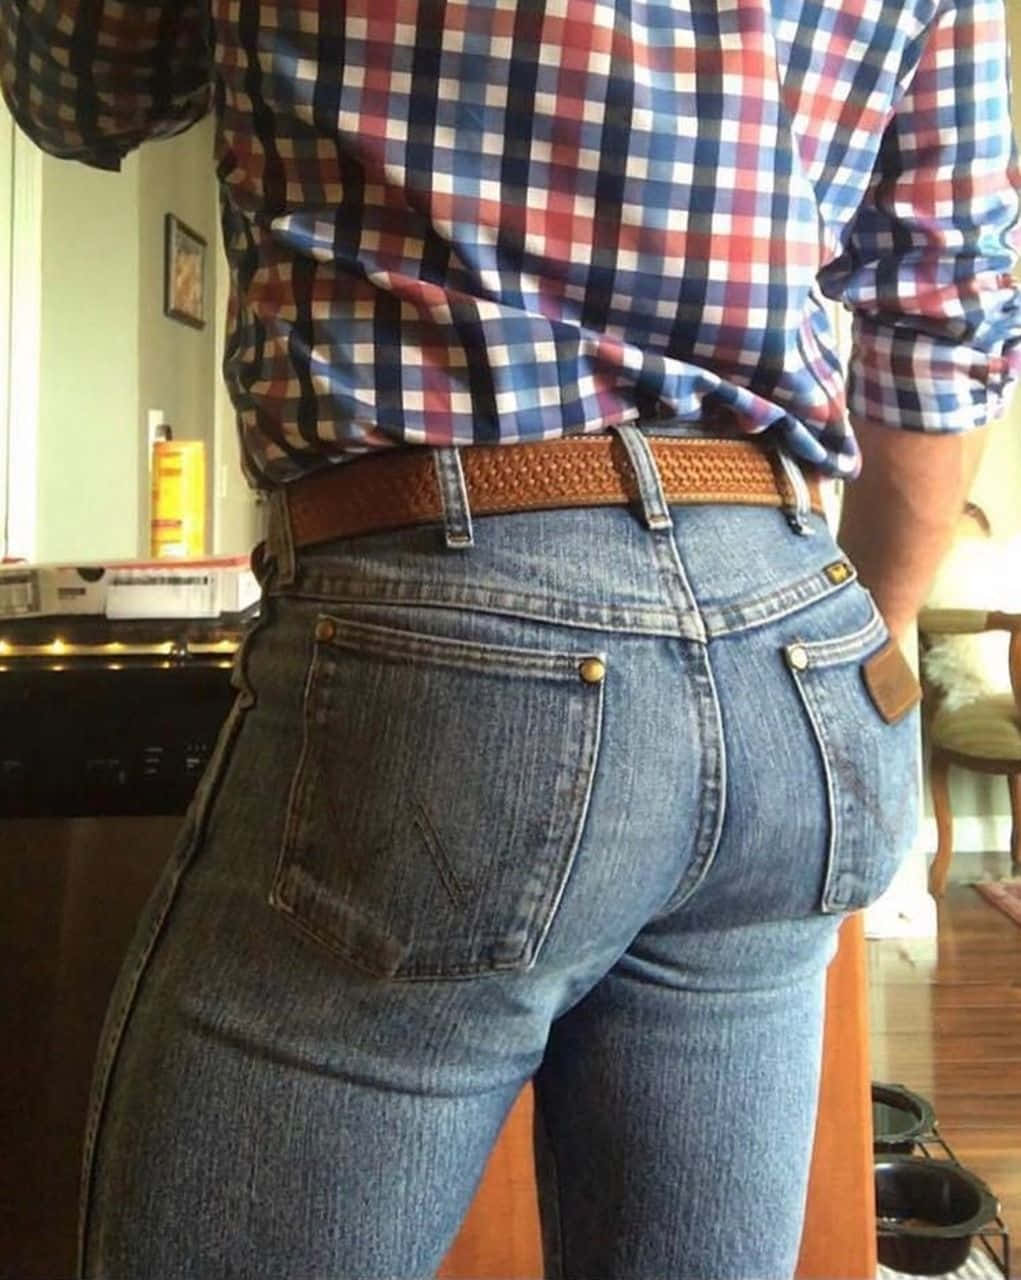 Denim jeans on a vintage wooden background